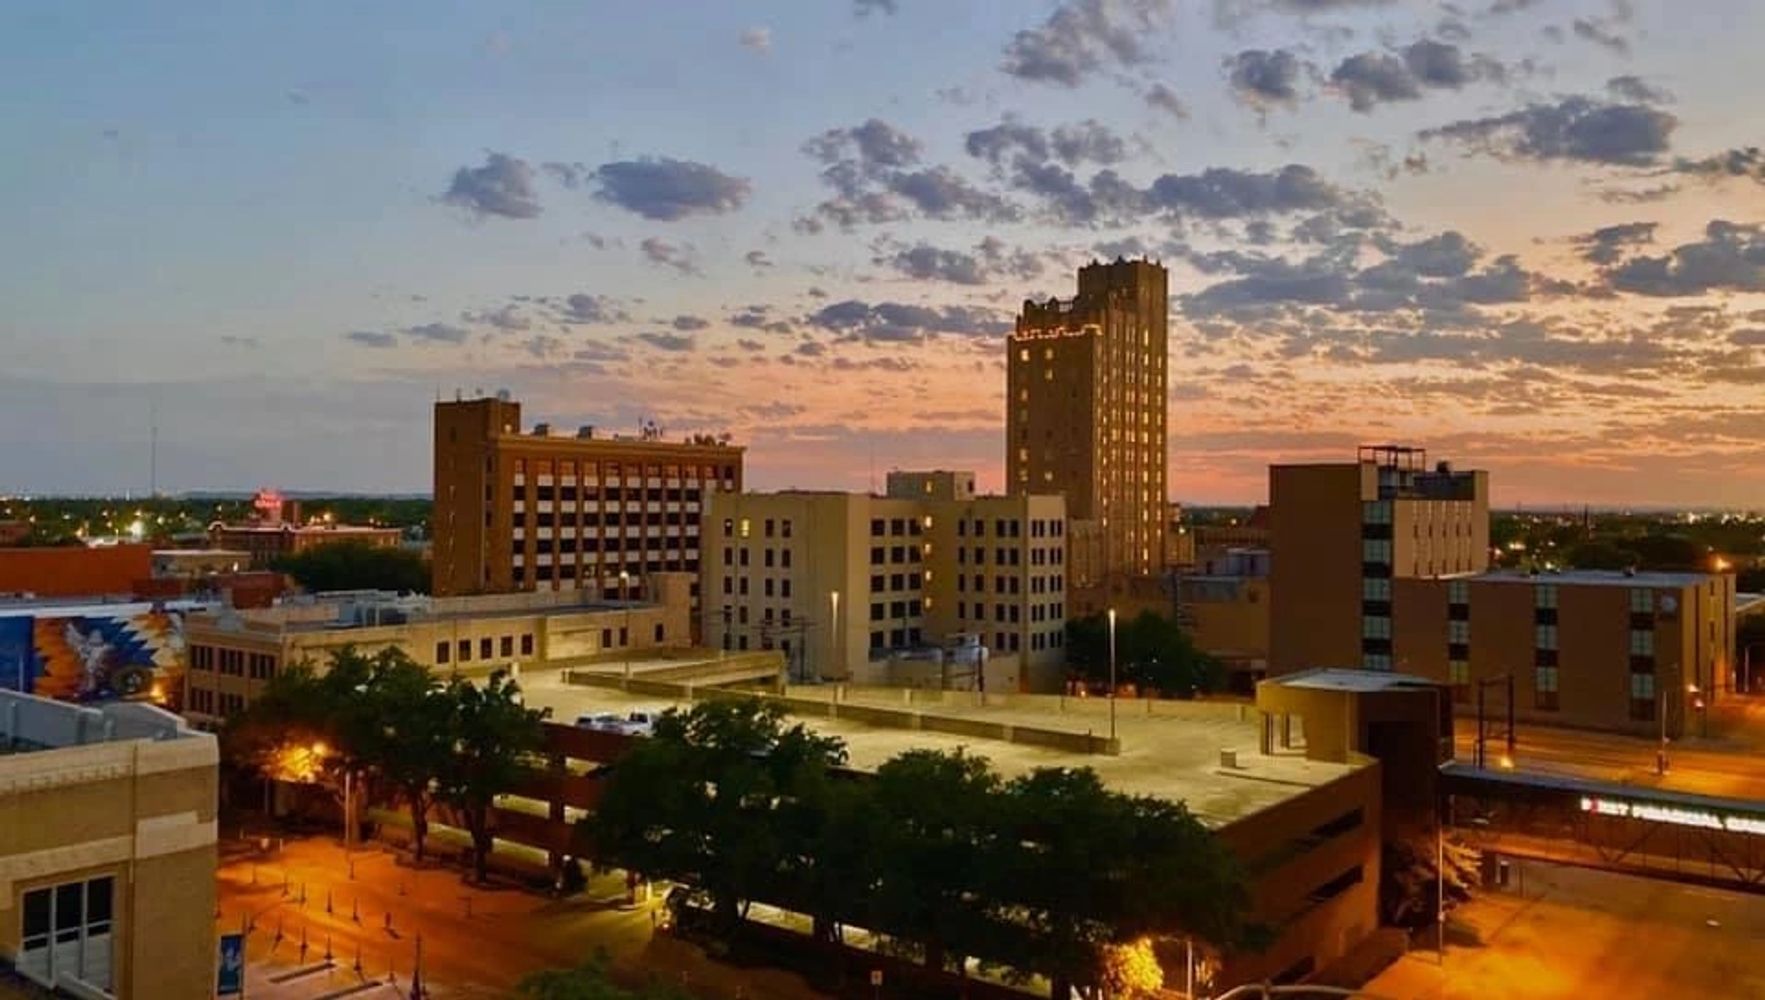 City of Abilene at AbileneHouses.com